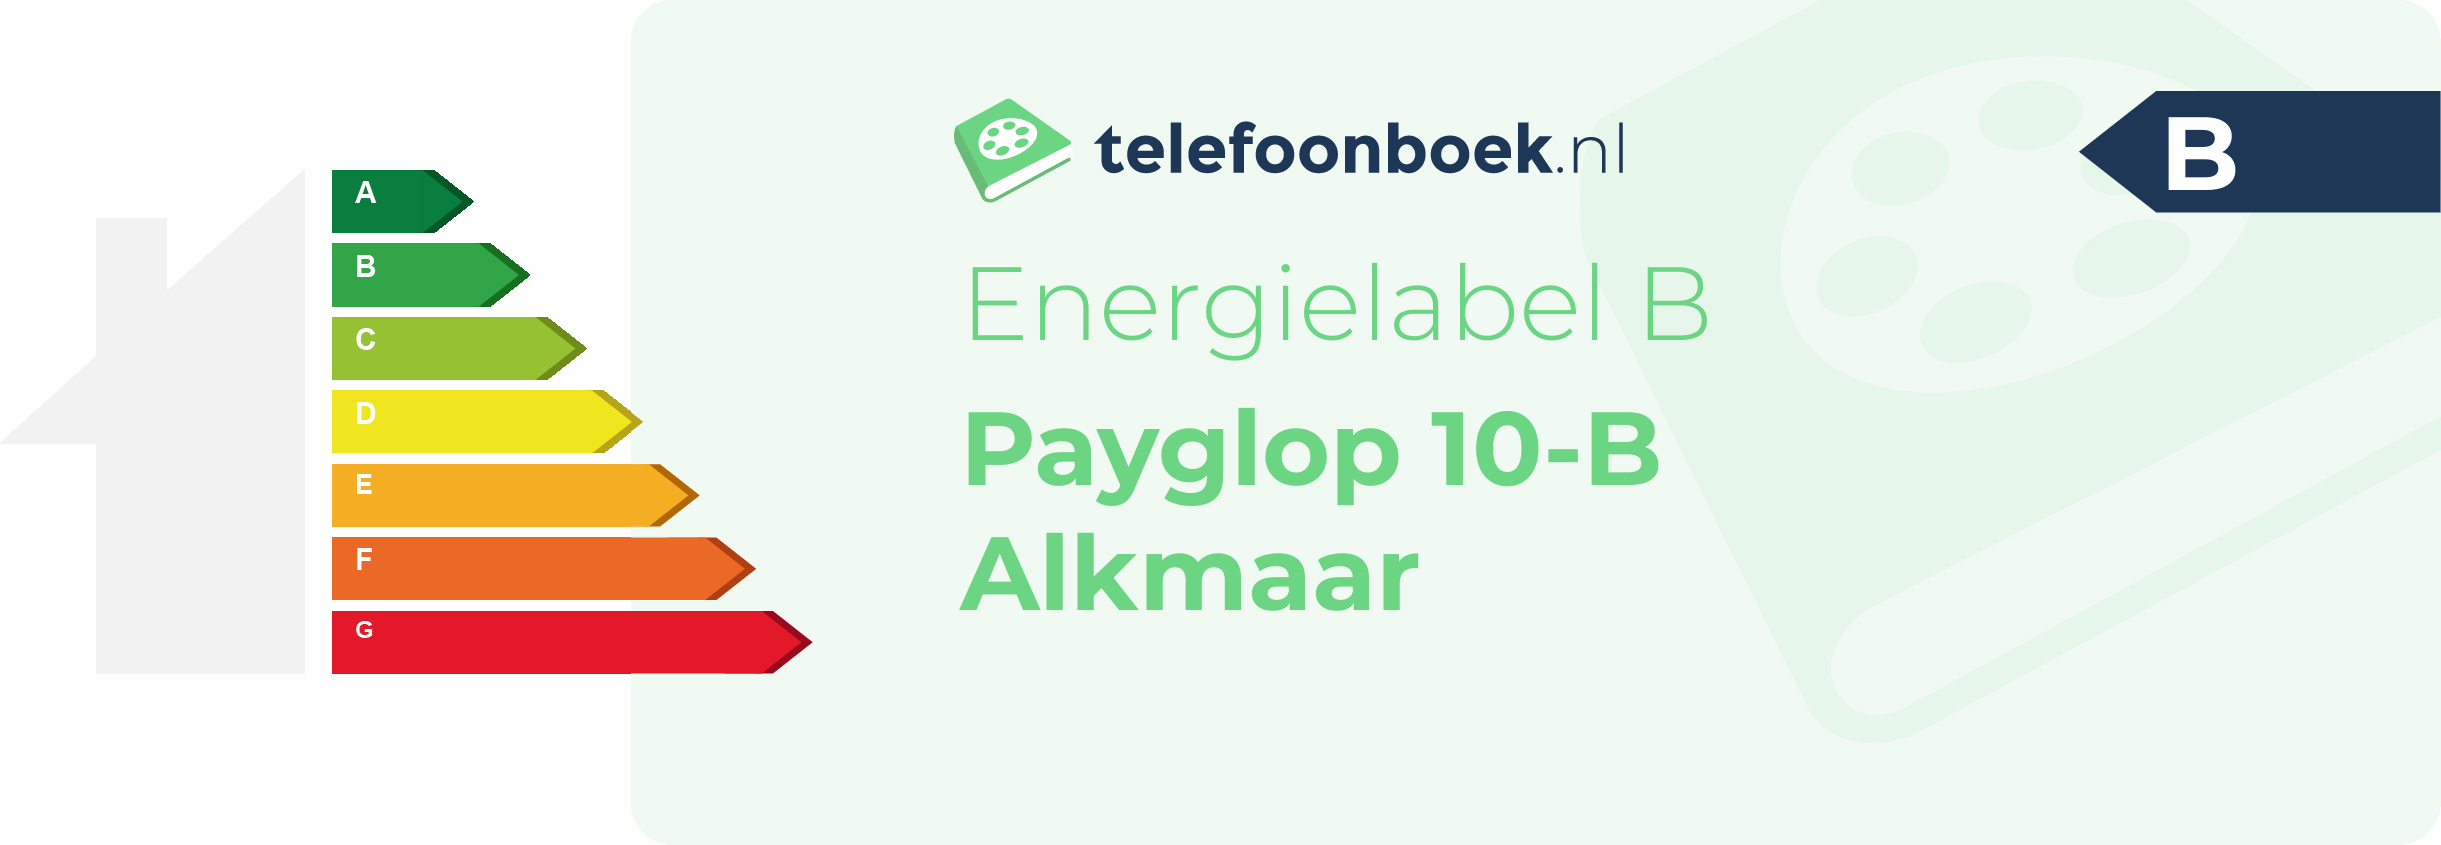 Energielabel Payglop 10-B Alkmaar